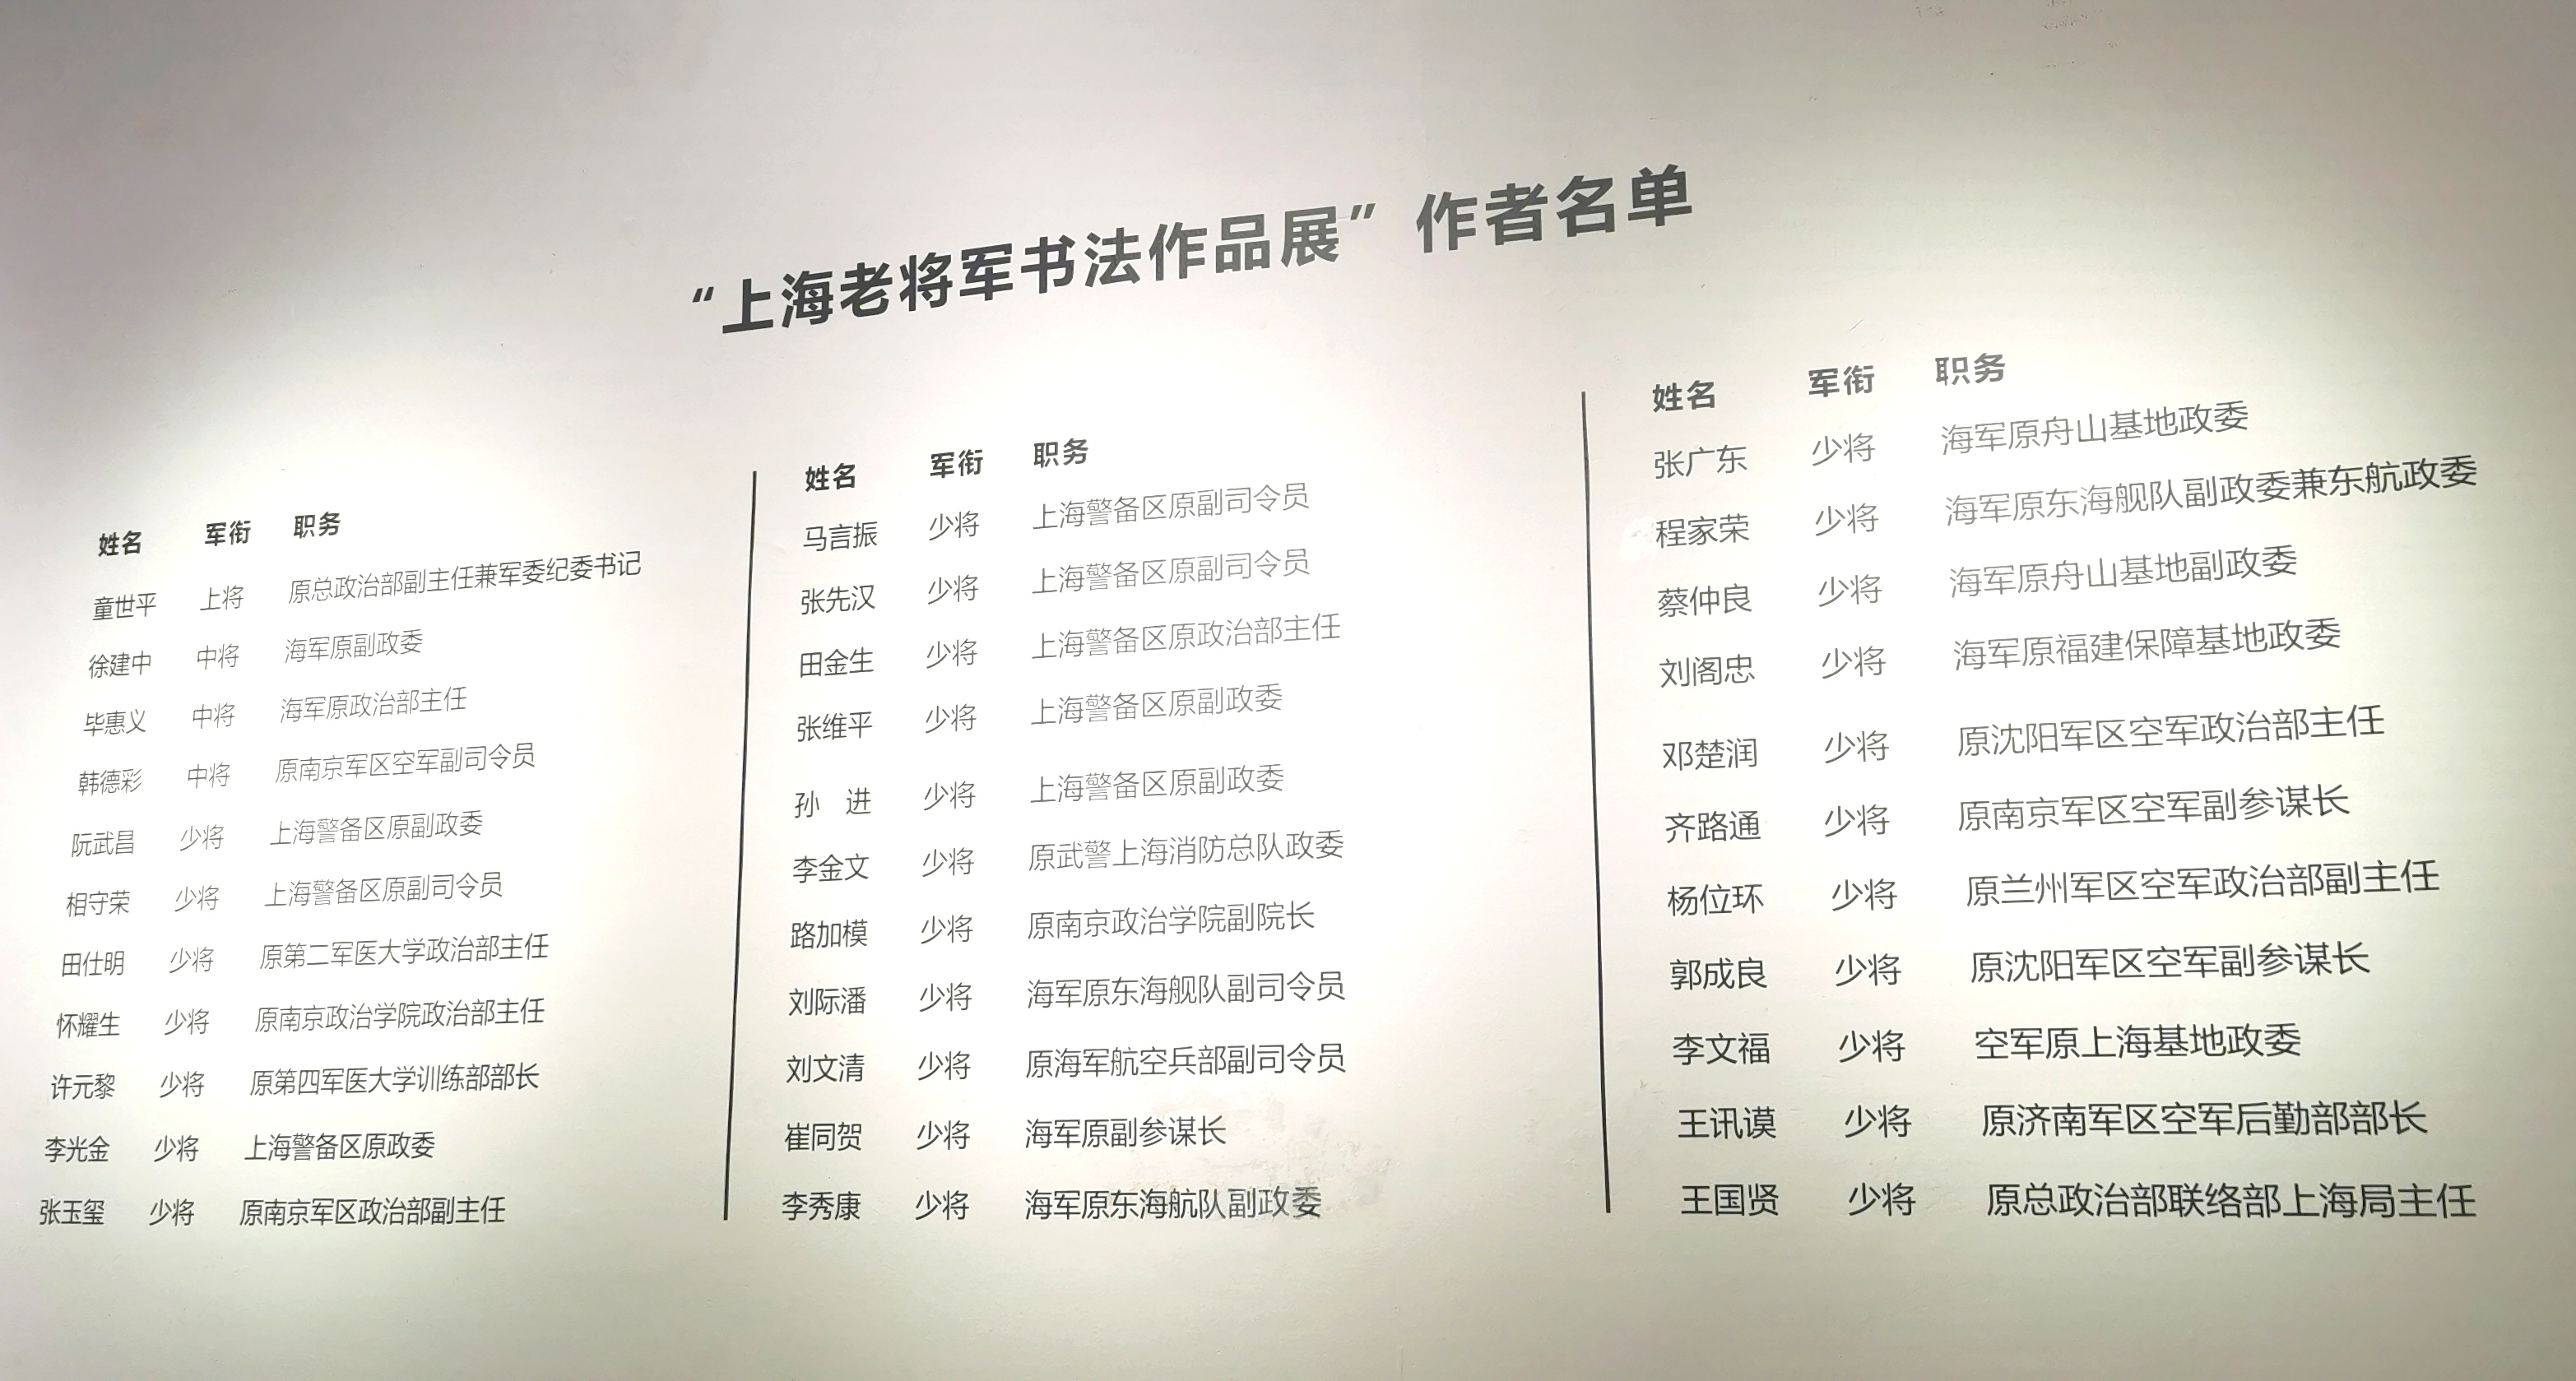 《爱我江山固我长城——上海老将军书法展》开幕